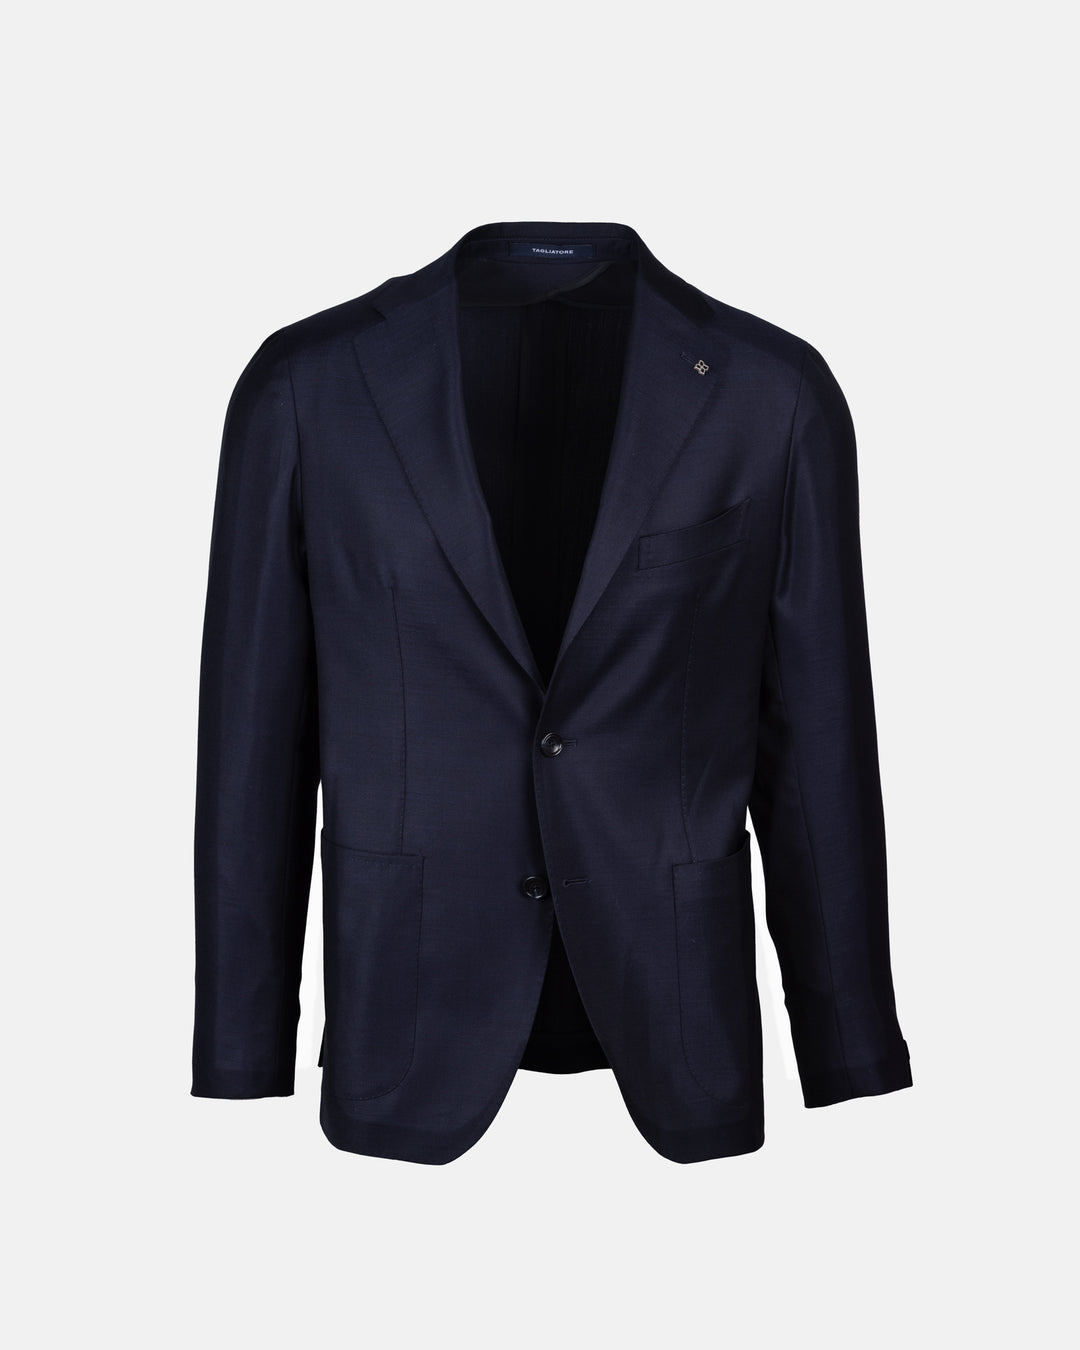 Monte carlo Suit - Navy